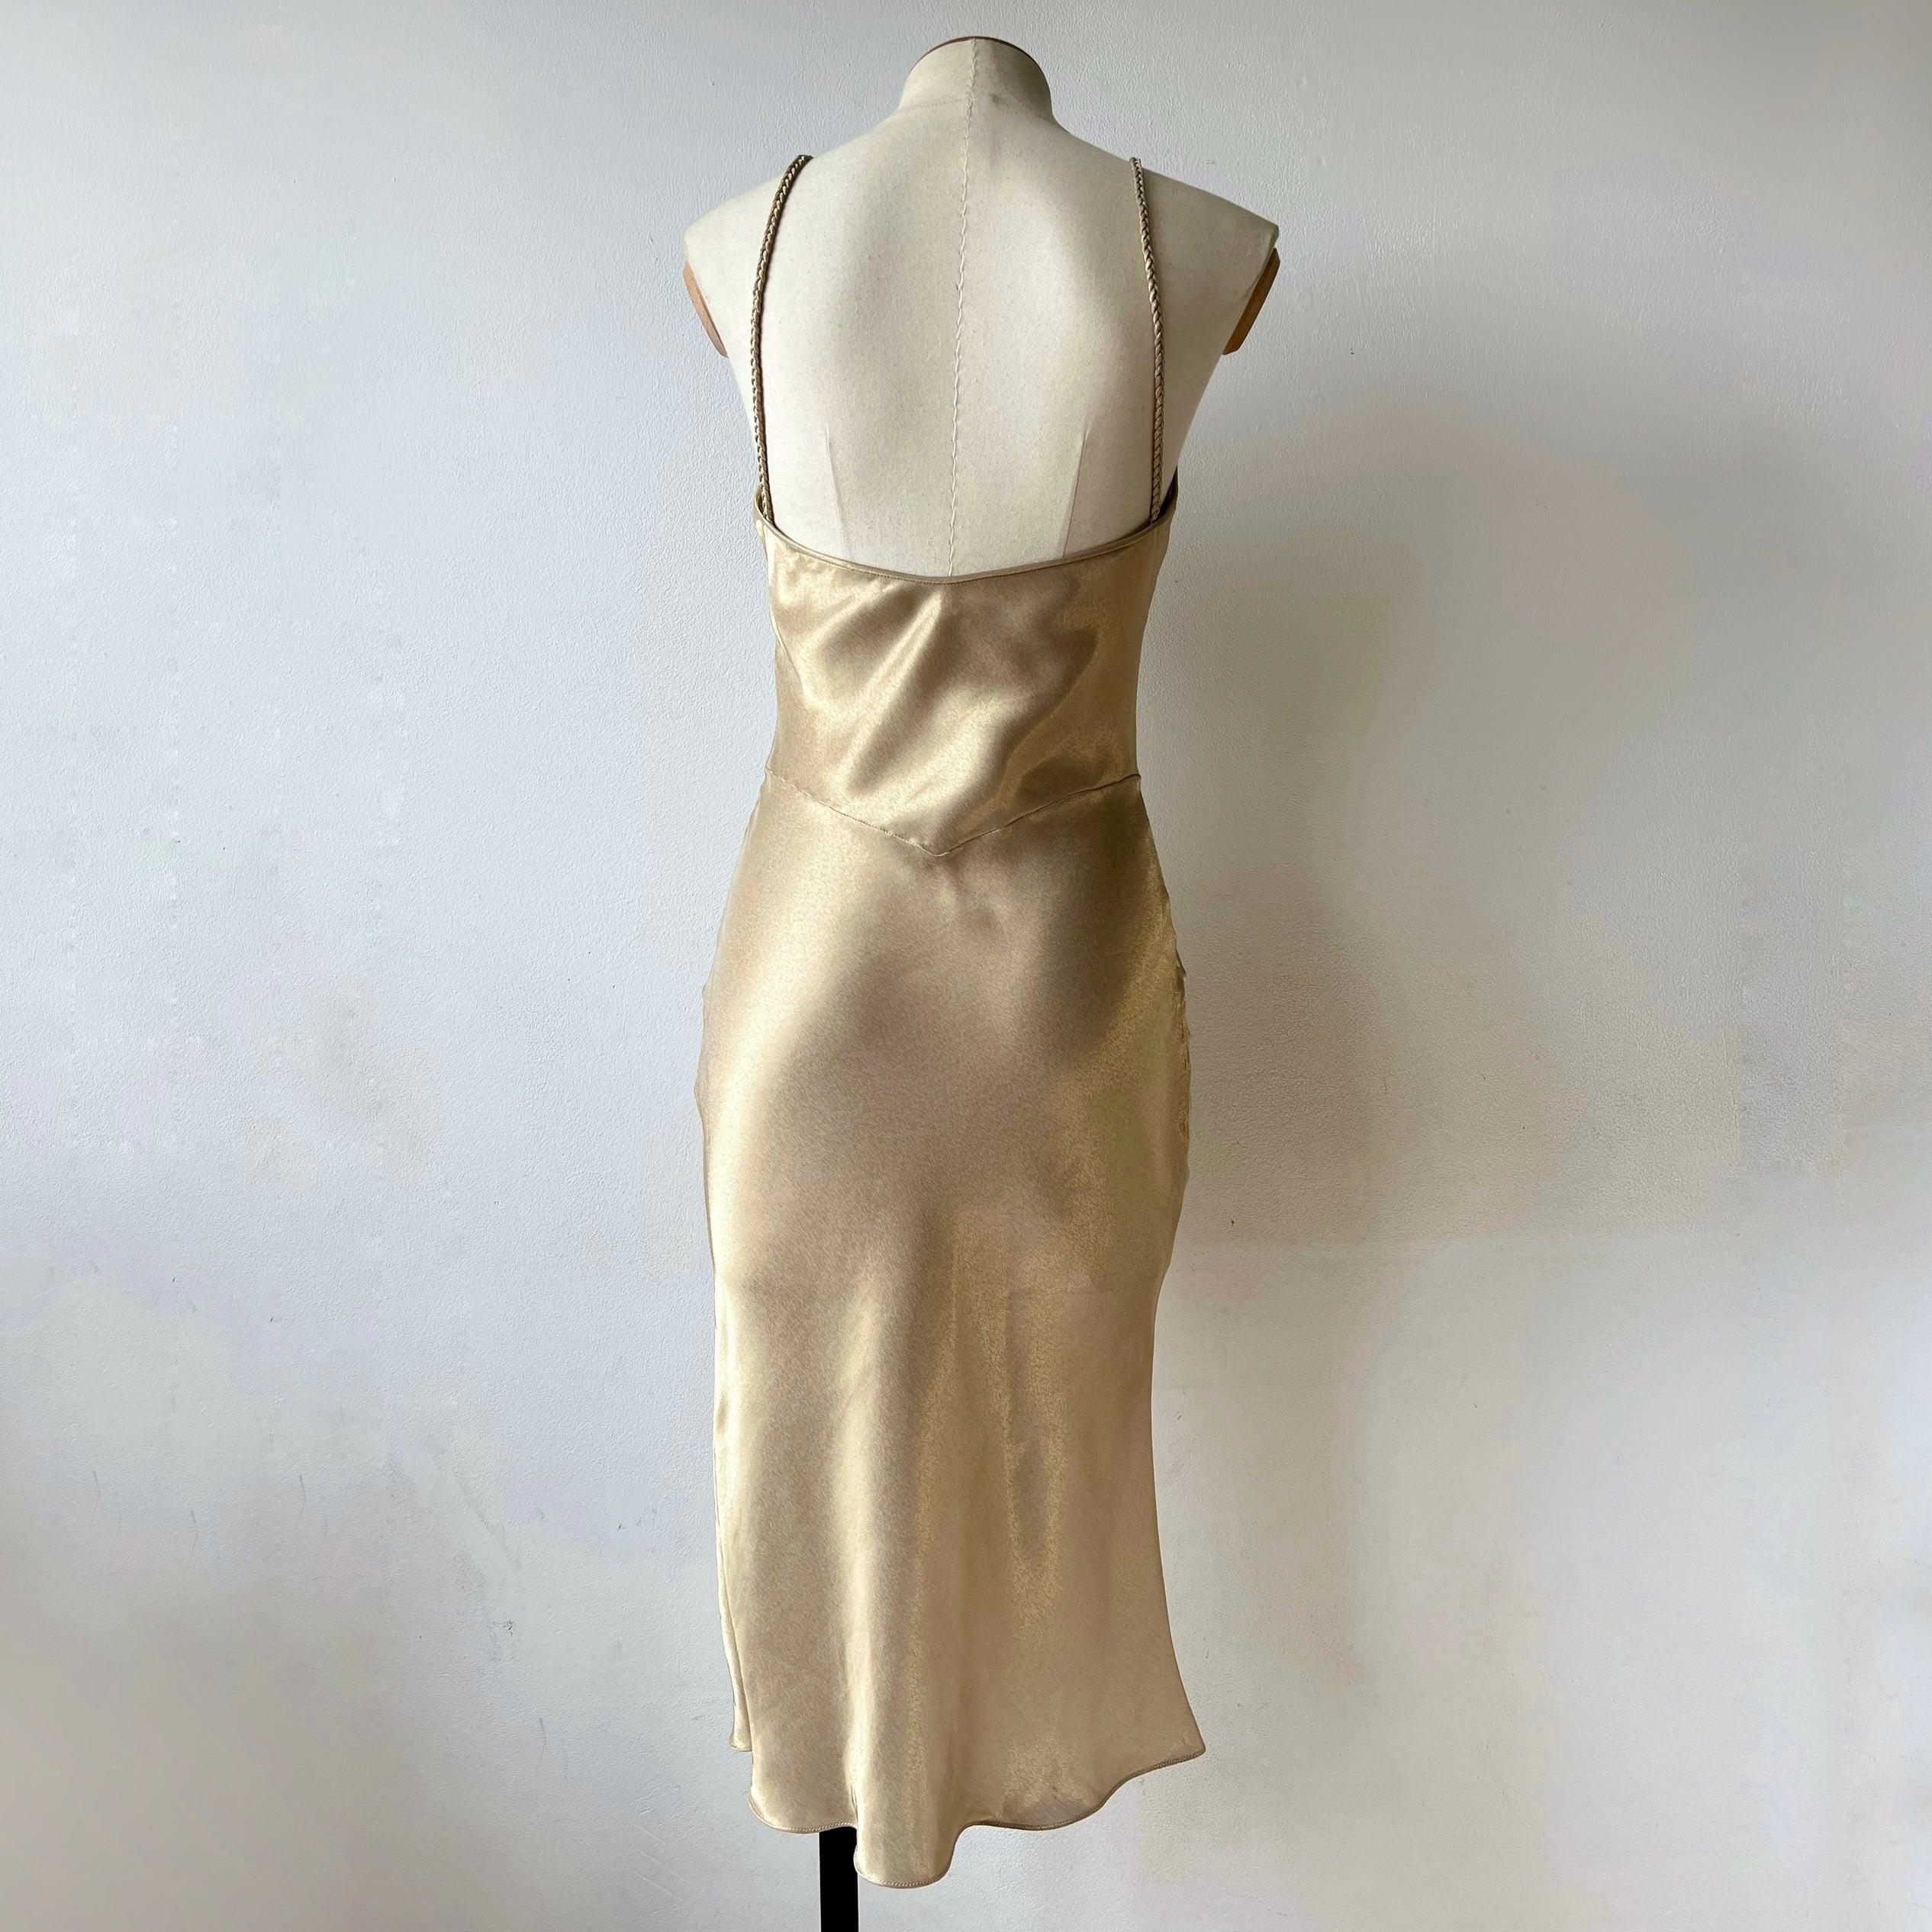 Vintage 00's Gold farbigen Dior Slip Kleid mit und tadellosem Glanz. Das Kleid ist fließend geschnitten und besteht aus einer Mischung aus Viskose, Seide und Polyester. Das Kleid ist mit gewebten Trägern versehen. 

Größe: fr 40, (ca. S)
Zustand: